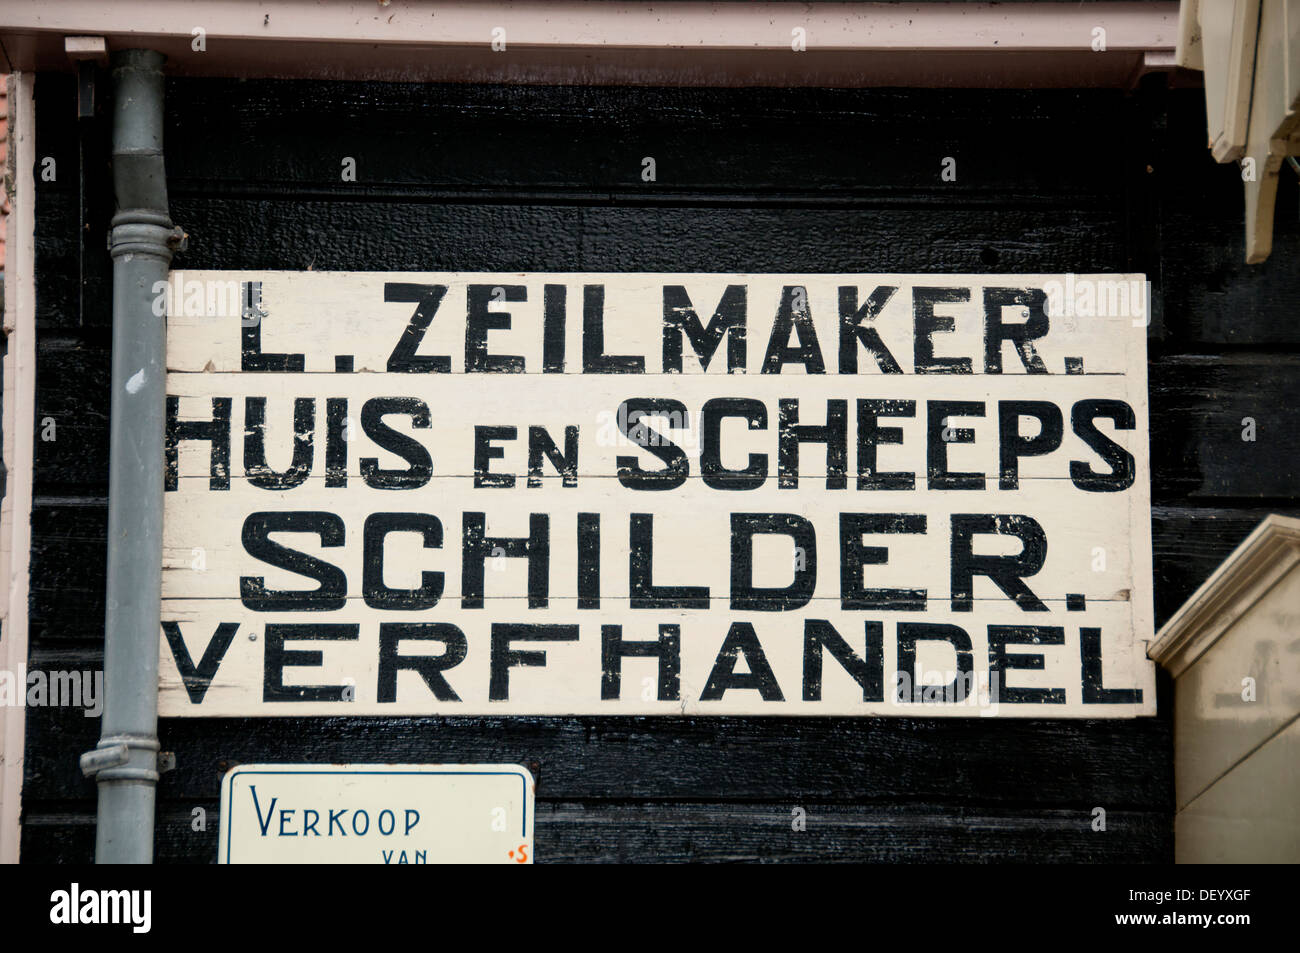 Museo Zuiderzee, Enkhuizen, preservando il patrimonio culturale - la storia marittima della vecchia regione Zuiderzee. Ijsselmeer, Olanda, Foto Stock